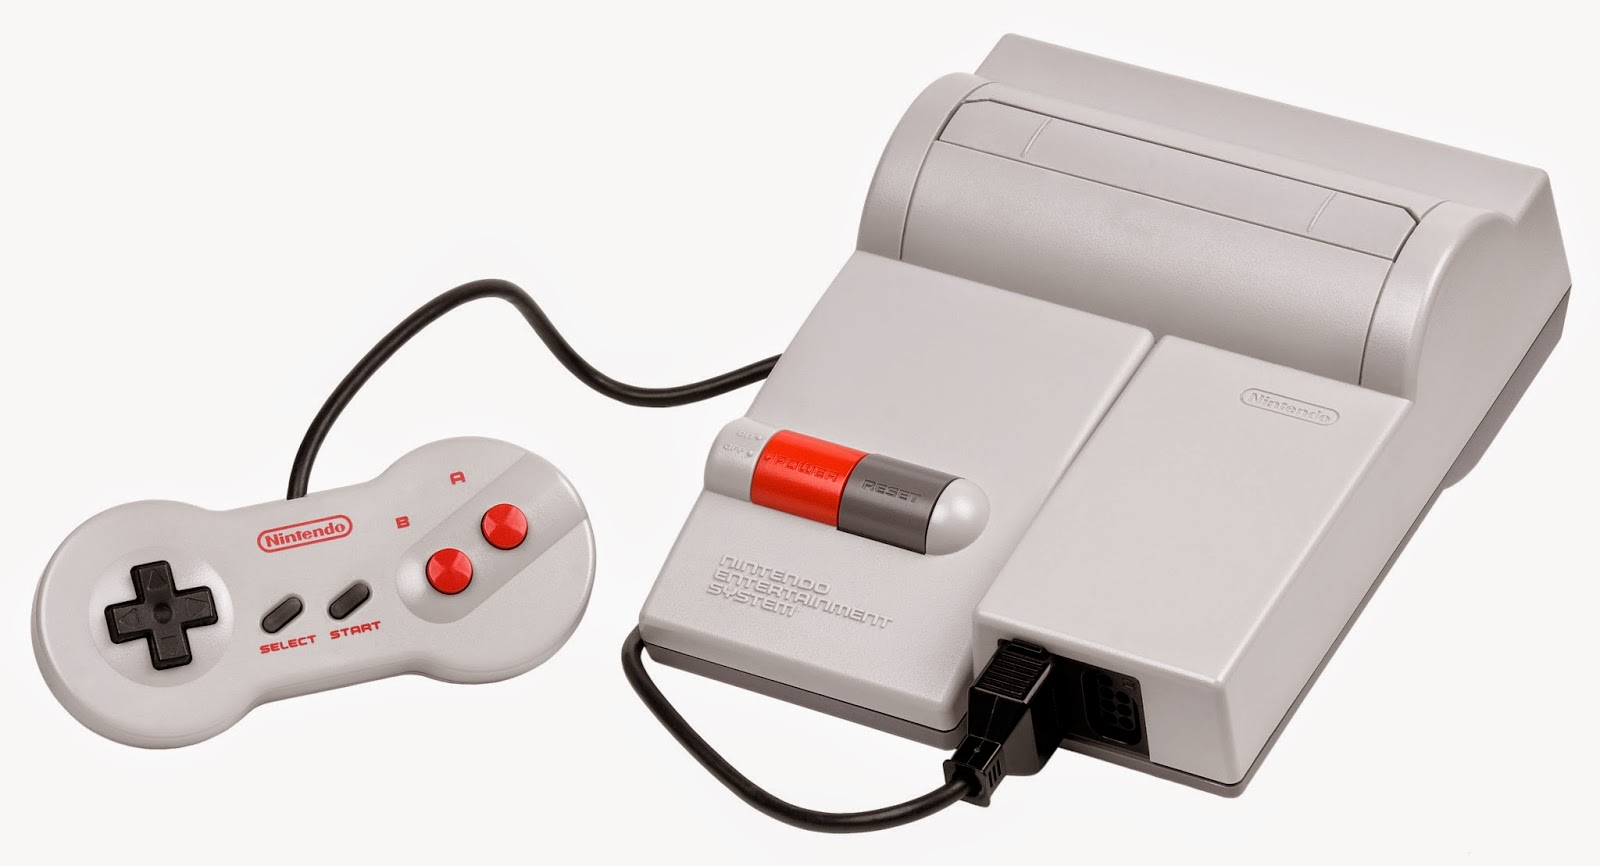 Contra (NES)  Baú do Videogame